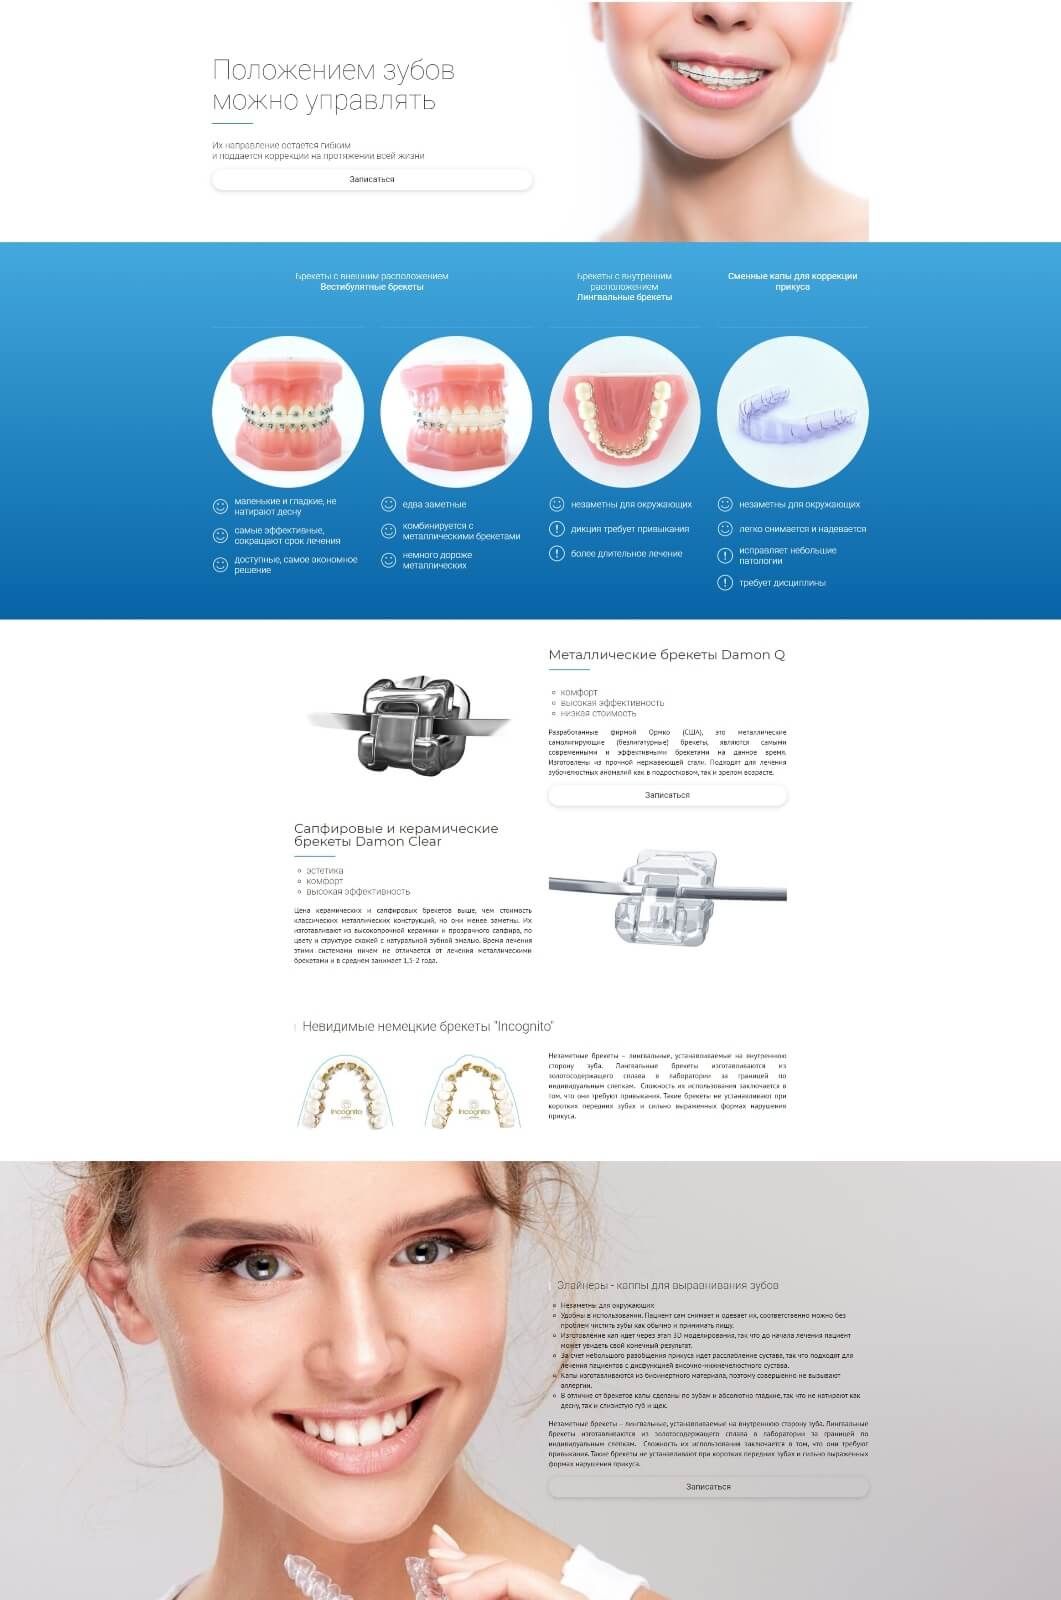 Страница сайта стоматологии об исправлении прикуса